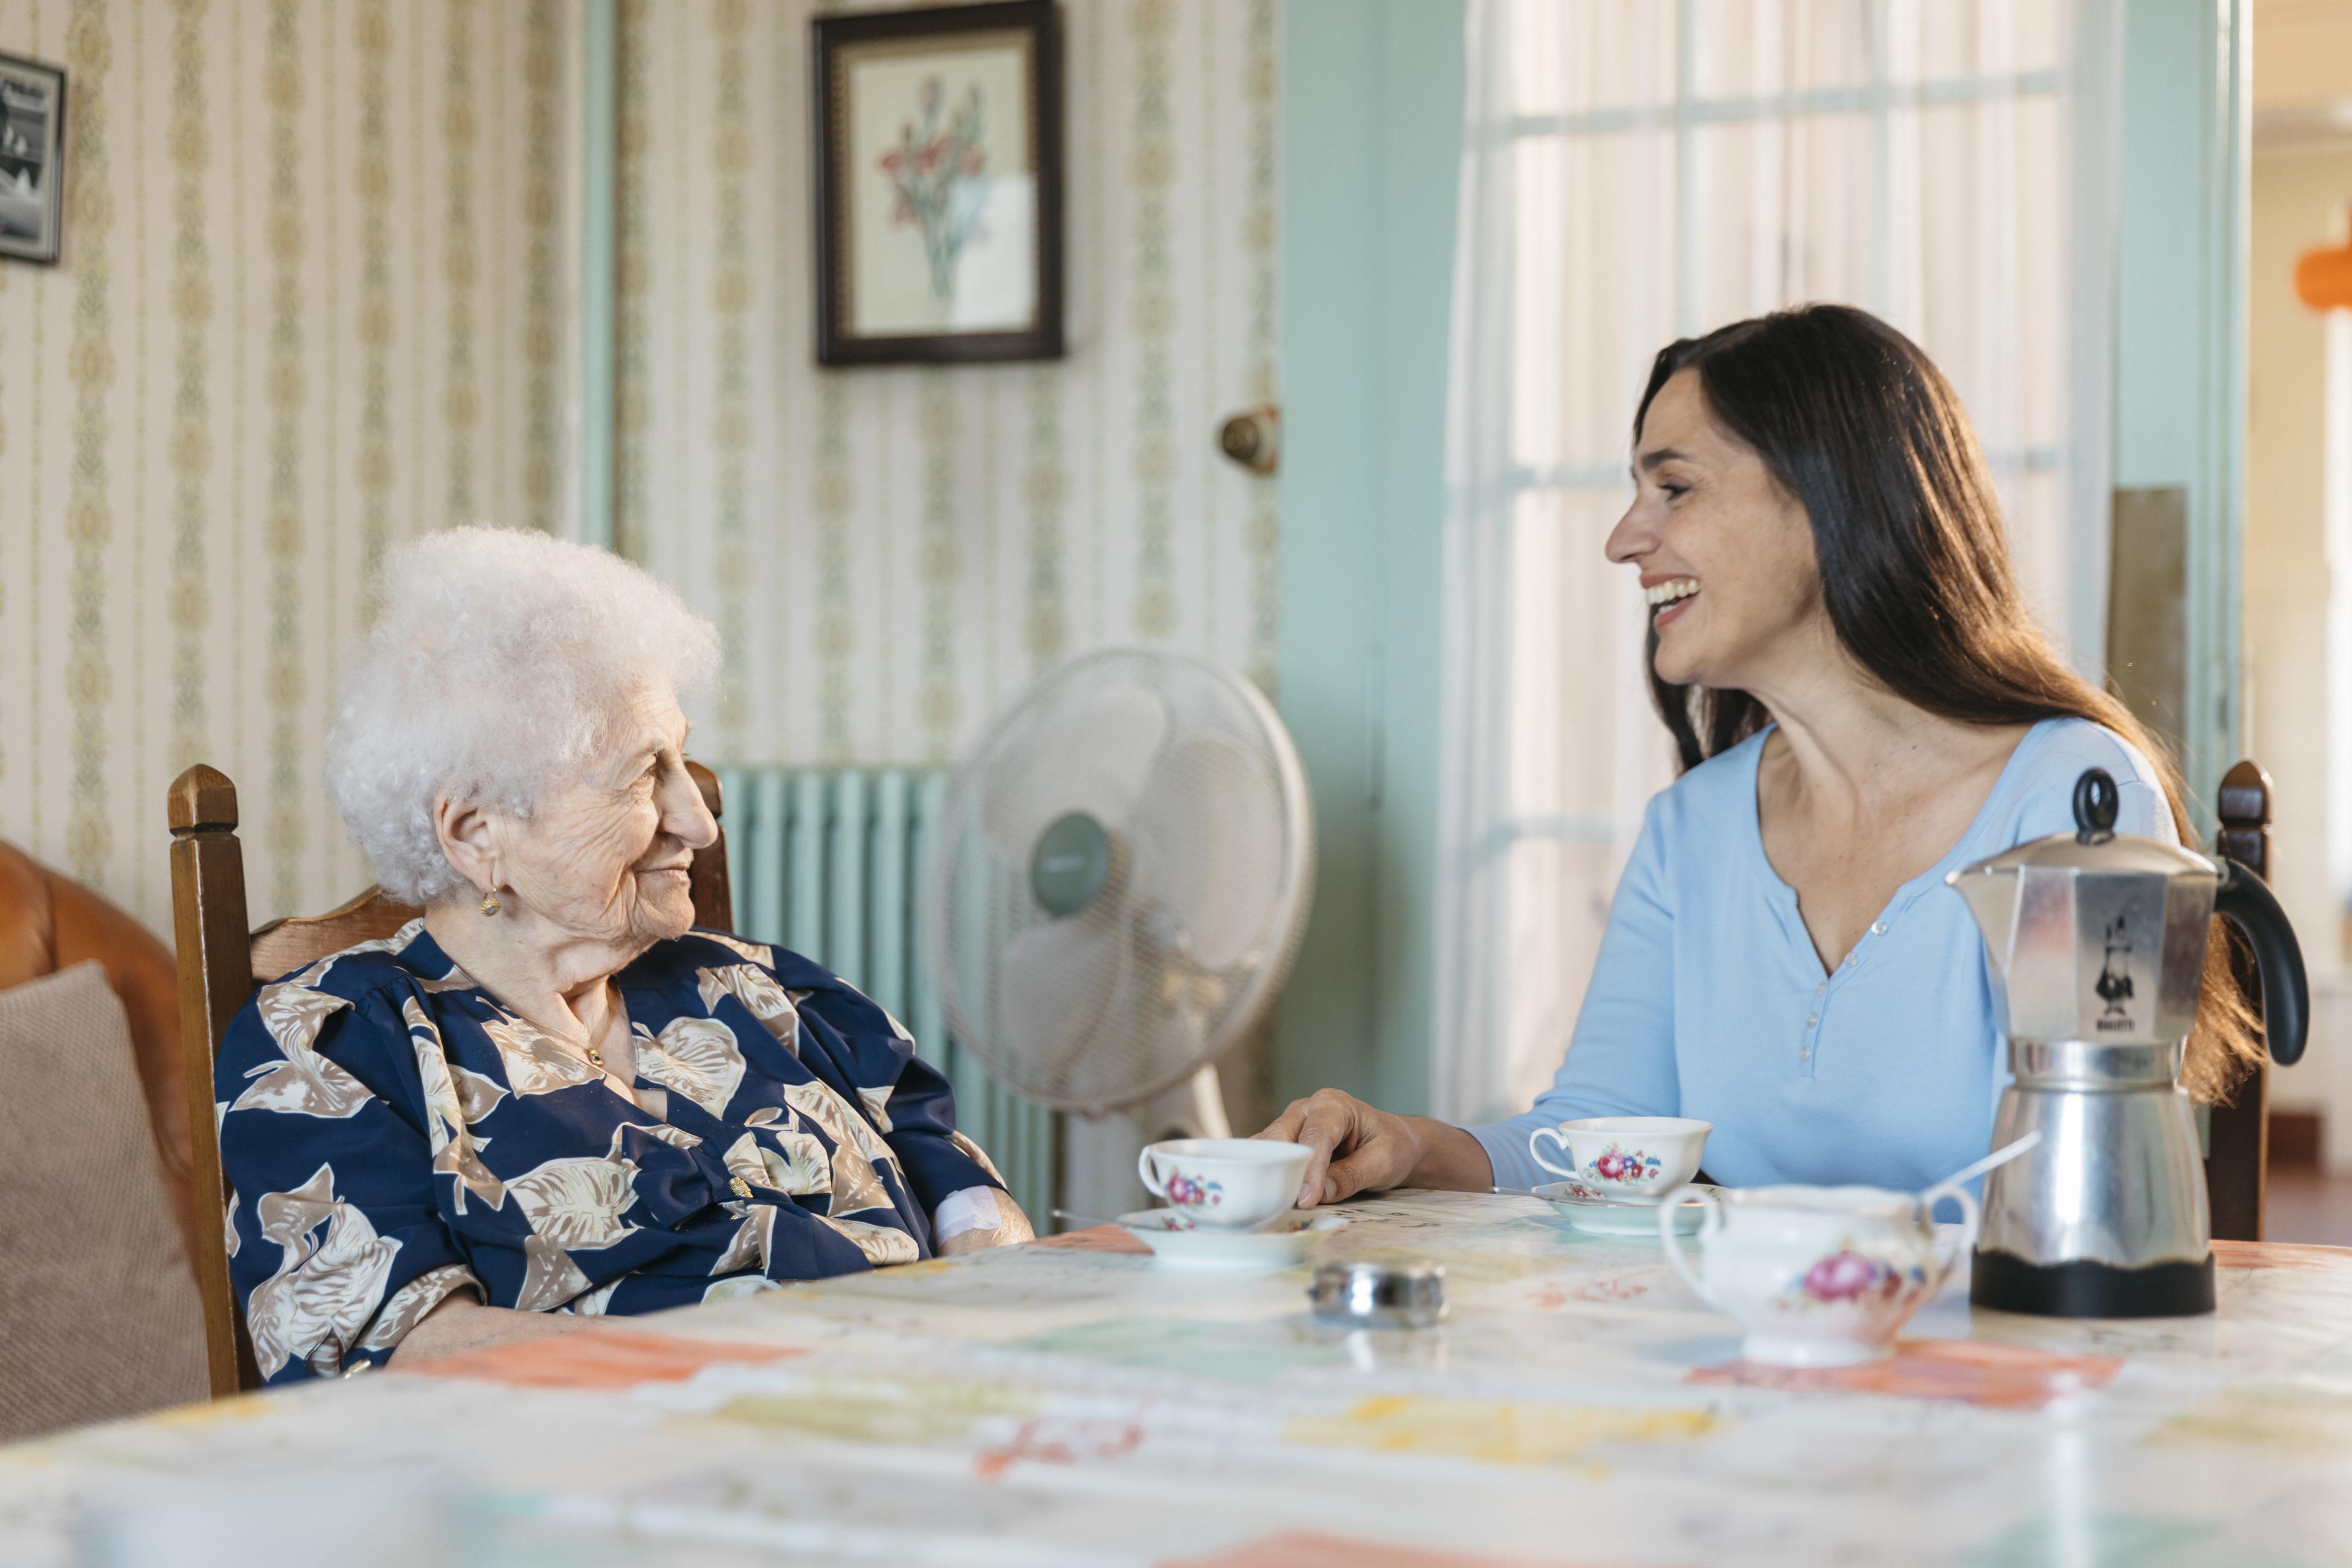 Service de visite et d'accompagnement : une visiteuse bénévole est assise à table avec une femme âgée, une cafetière et deux tasses sont à disposition.